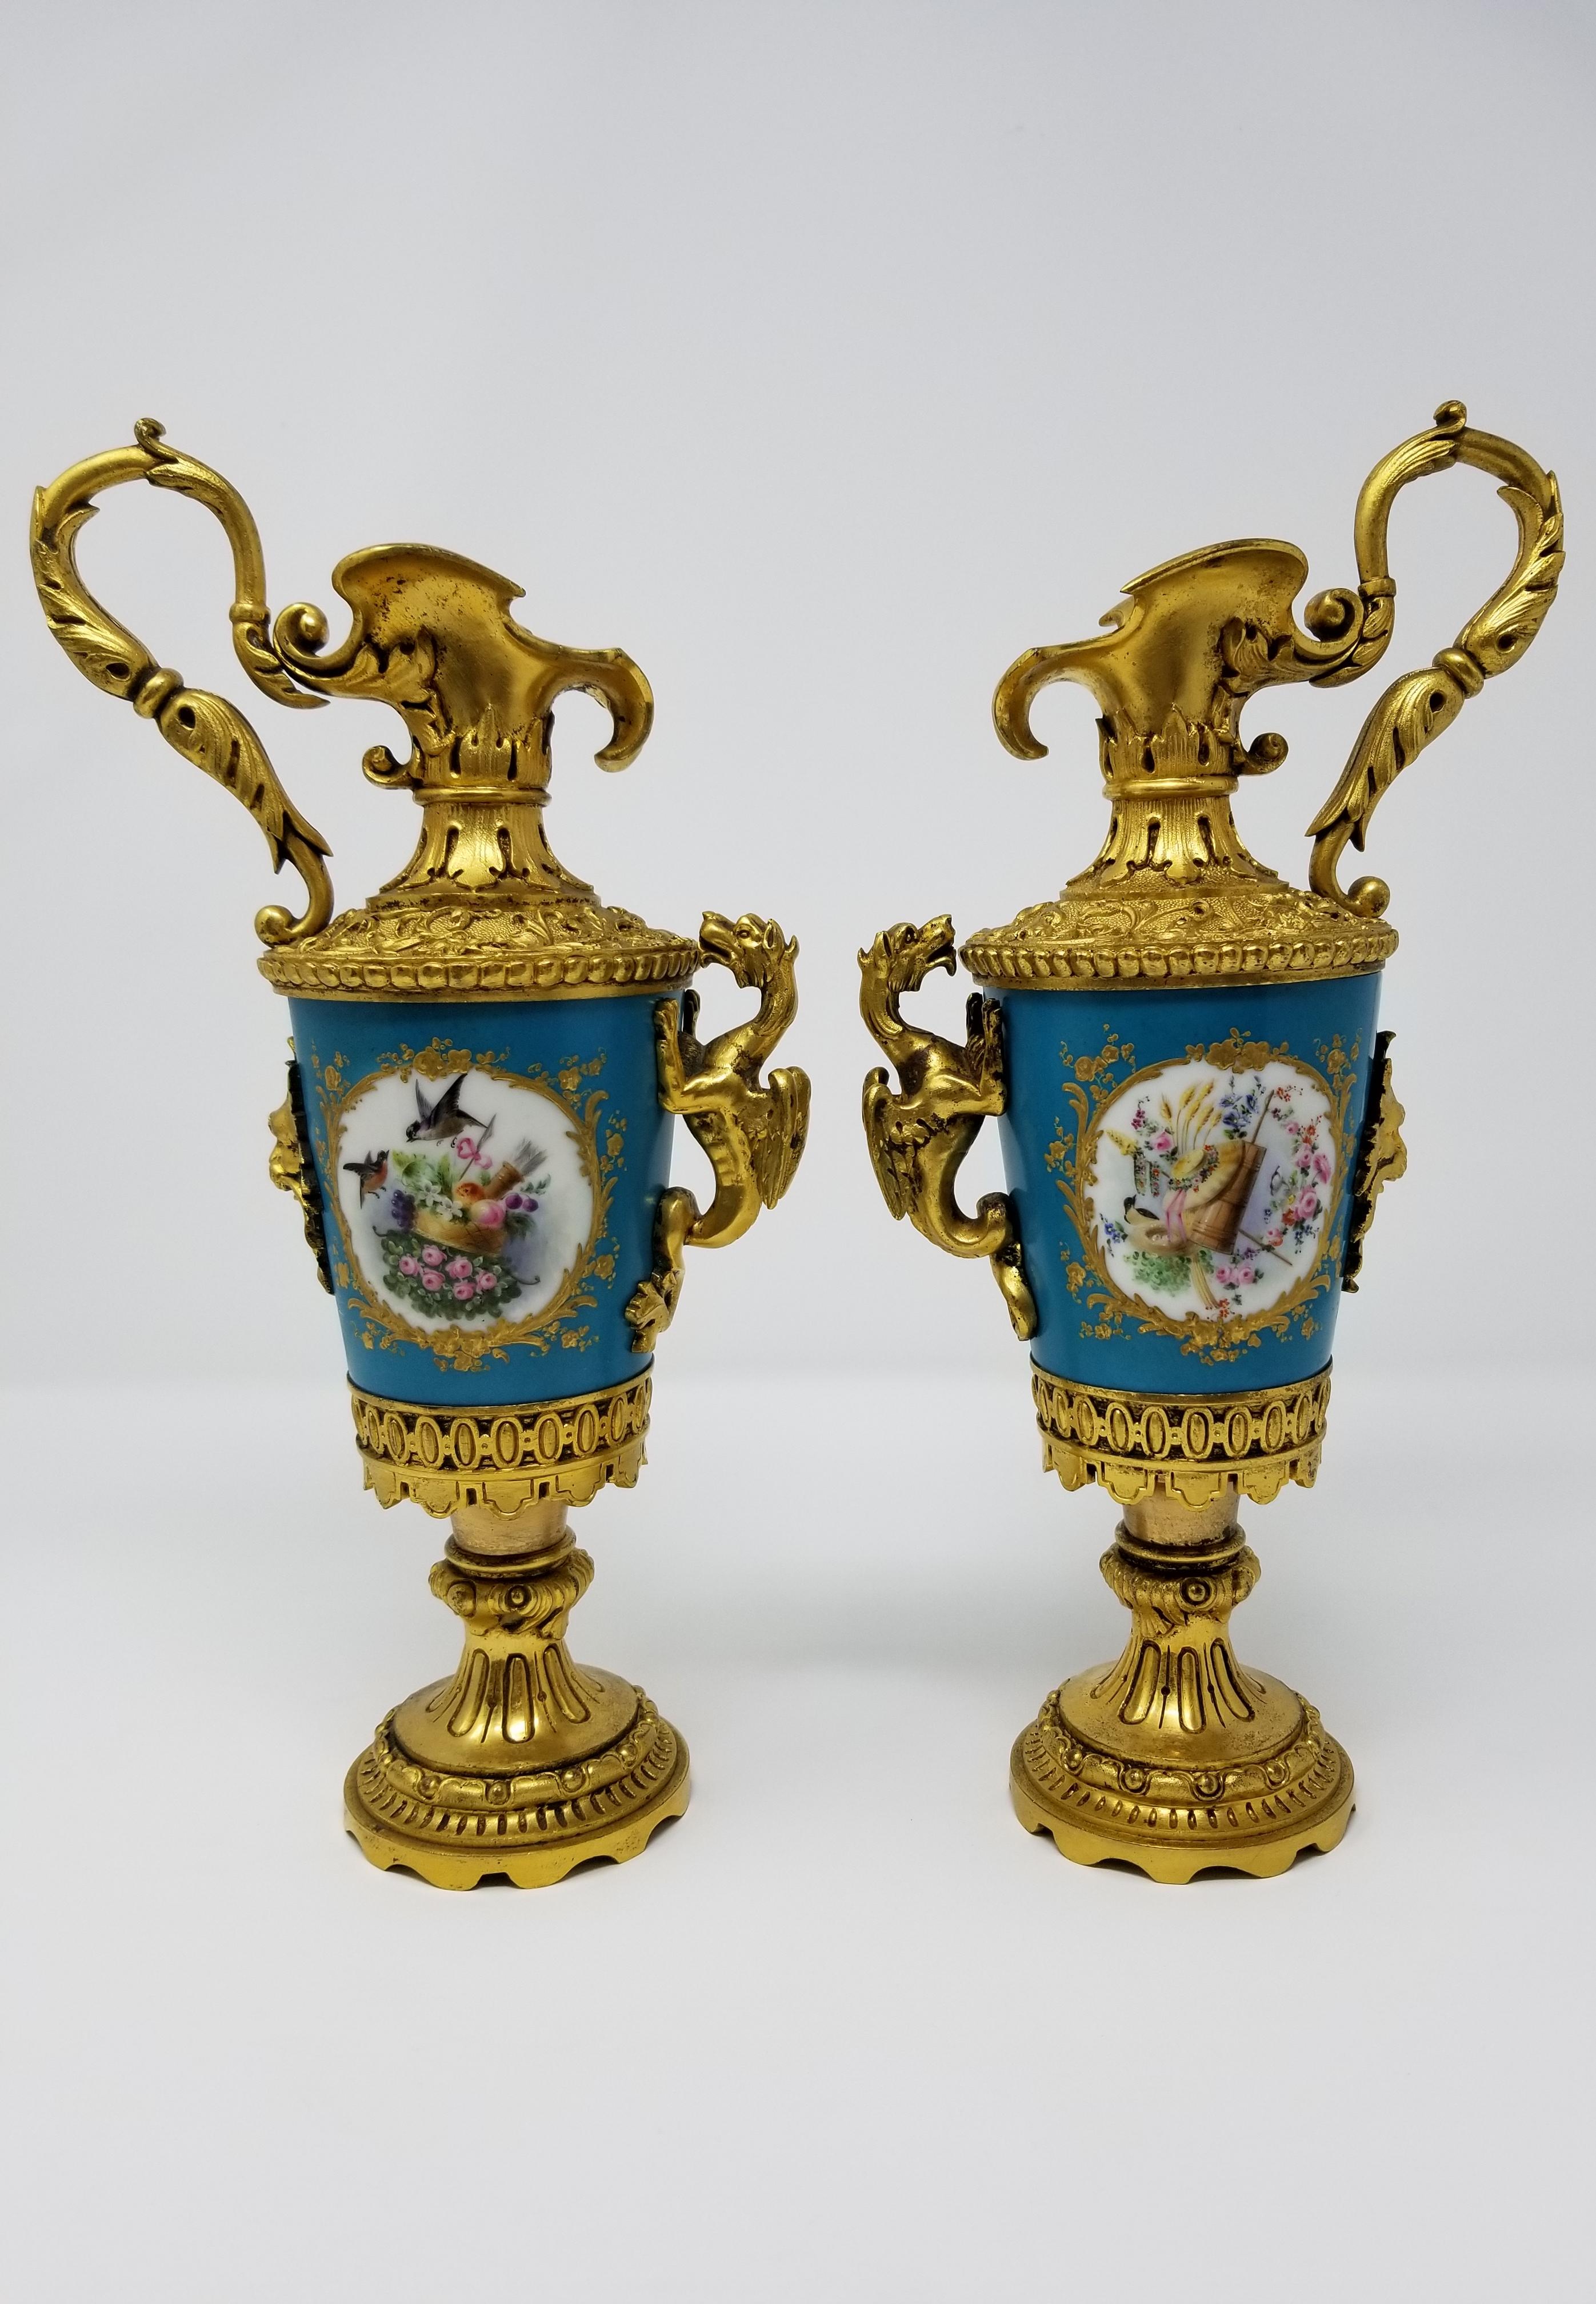 Ein schönes Paar von 19. Jahrhundert Louis XVI-Stil Französisch Sèvres-Stil Porzellan und ormolu-mounted Ewers mit Drachen Griffe, Vögel und Blumen. Das Porzellan ist auf feinste, handziselierte und ziselierte Doré-Bronze-Fassungen montiert. Die